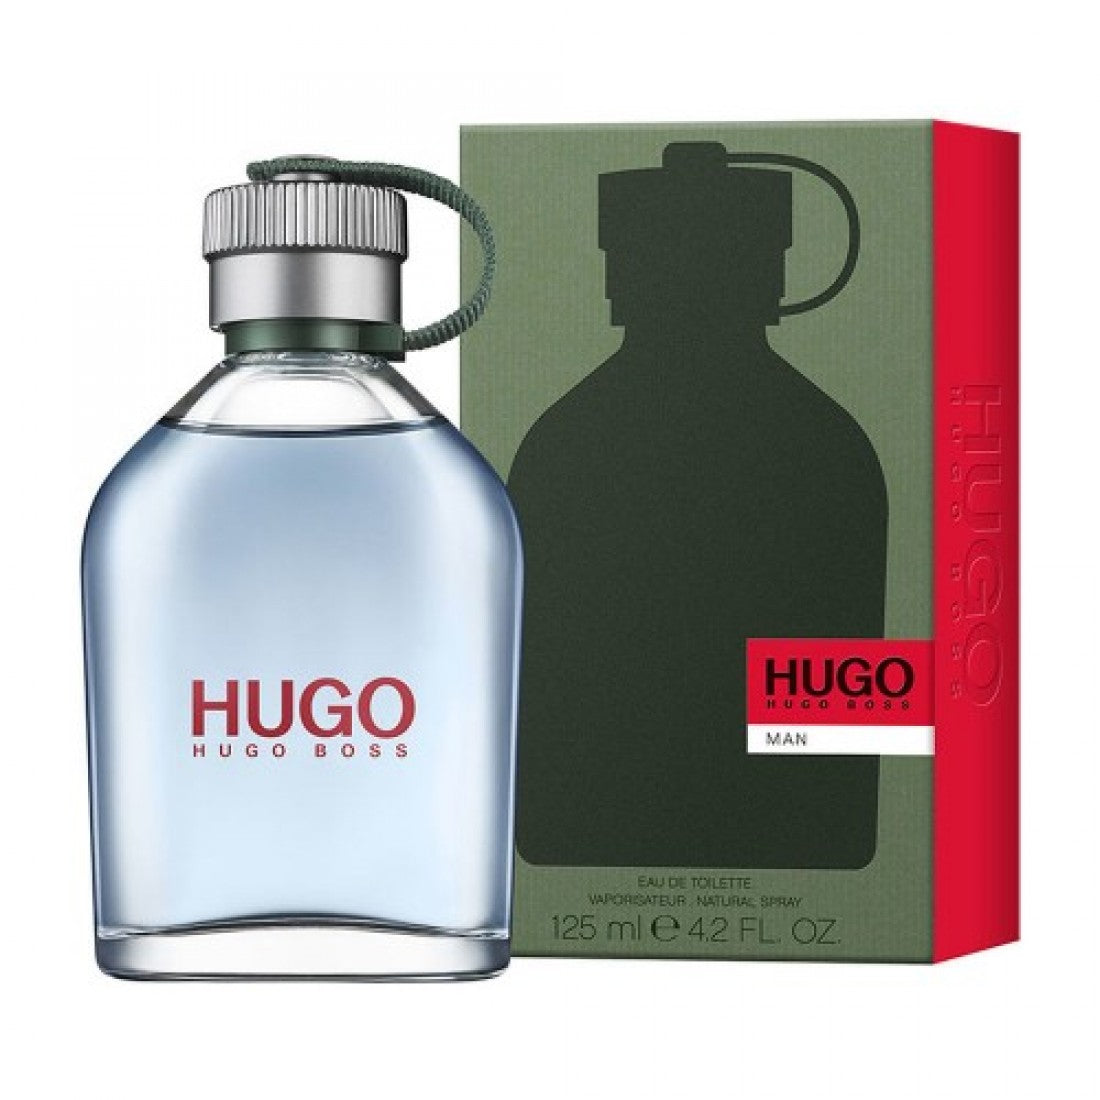 Hugo Boss Hugo Man 125 ml